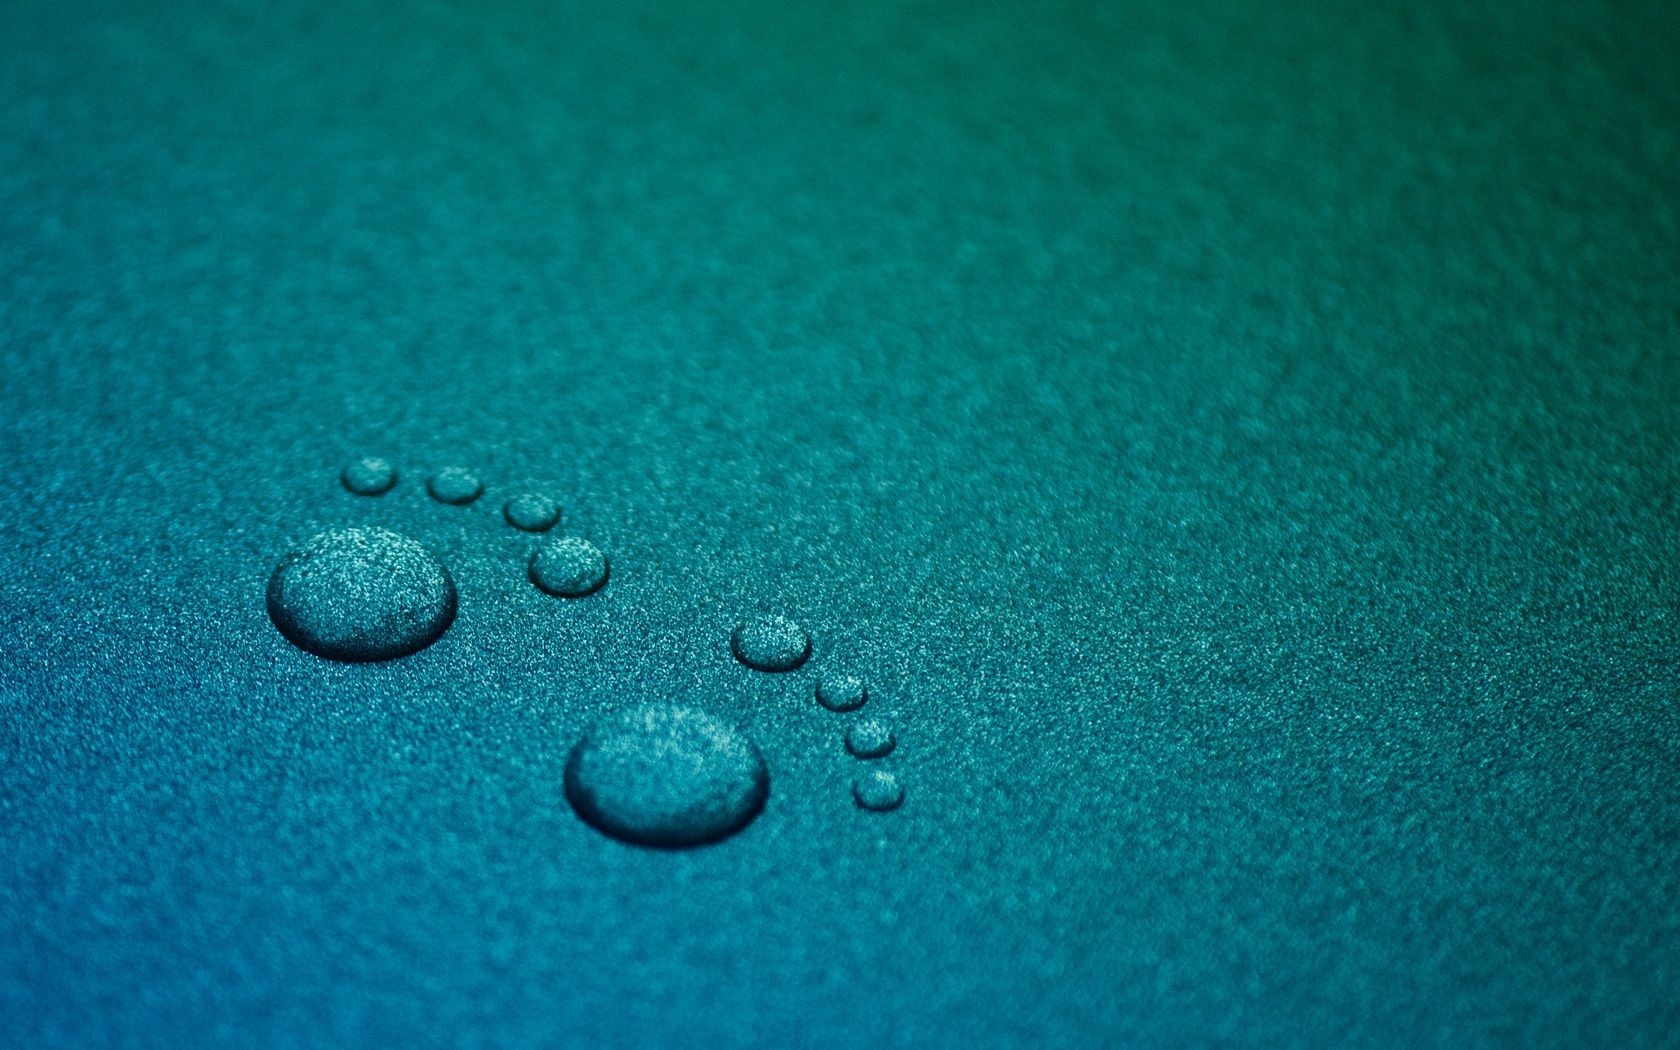 Items Desktop Rain Drop Texture Dew Droplet Abstract - Foot Print Wallpaper Hd - HD Wallpaper 